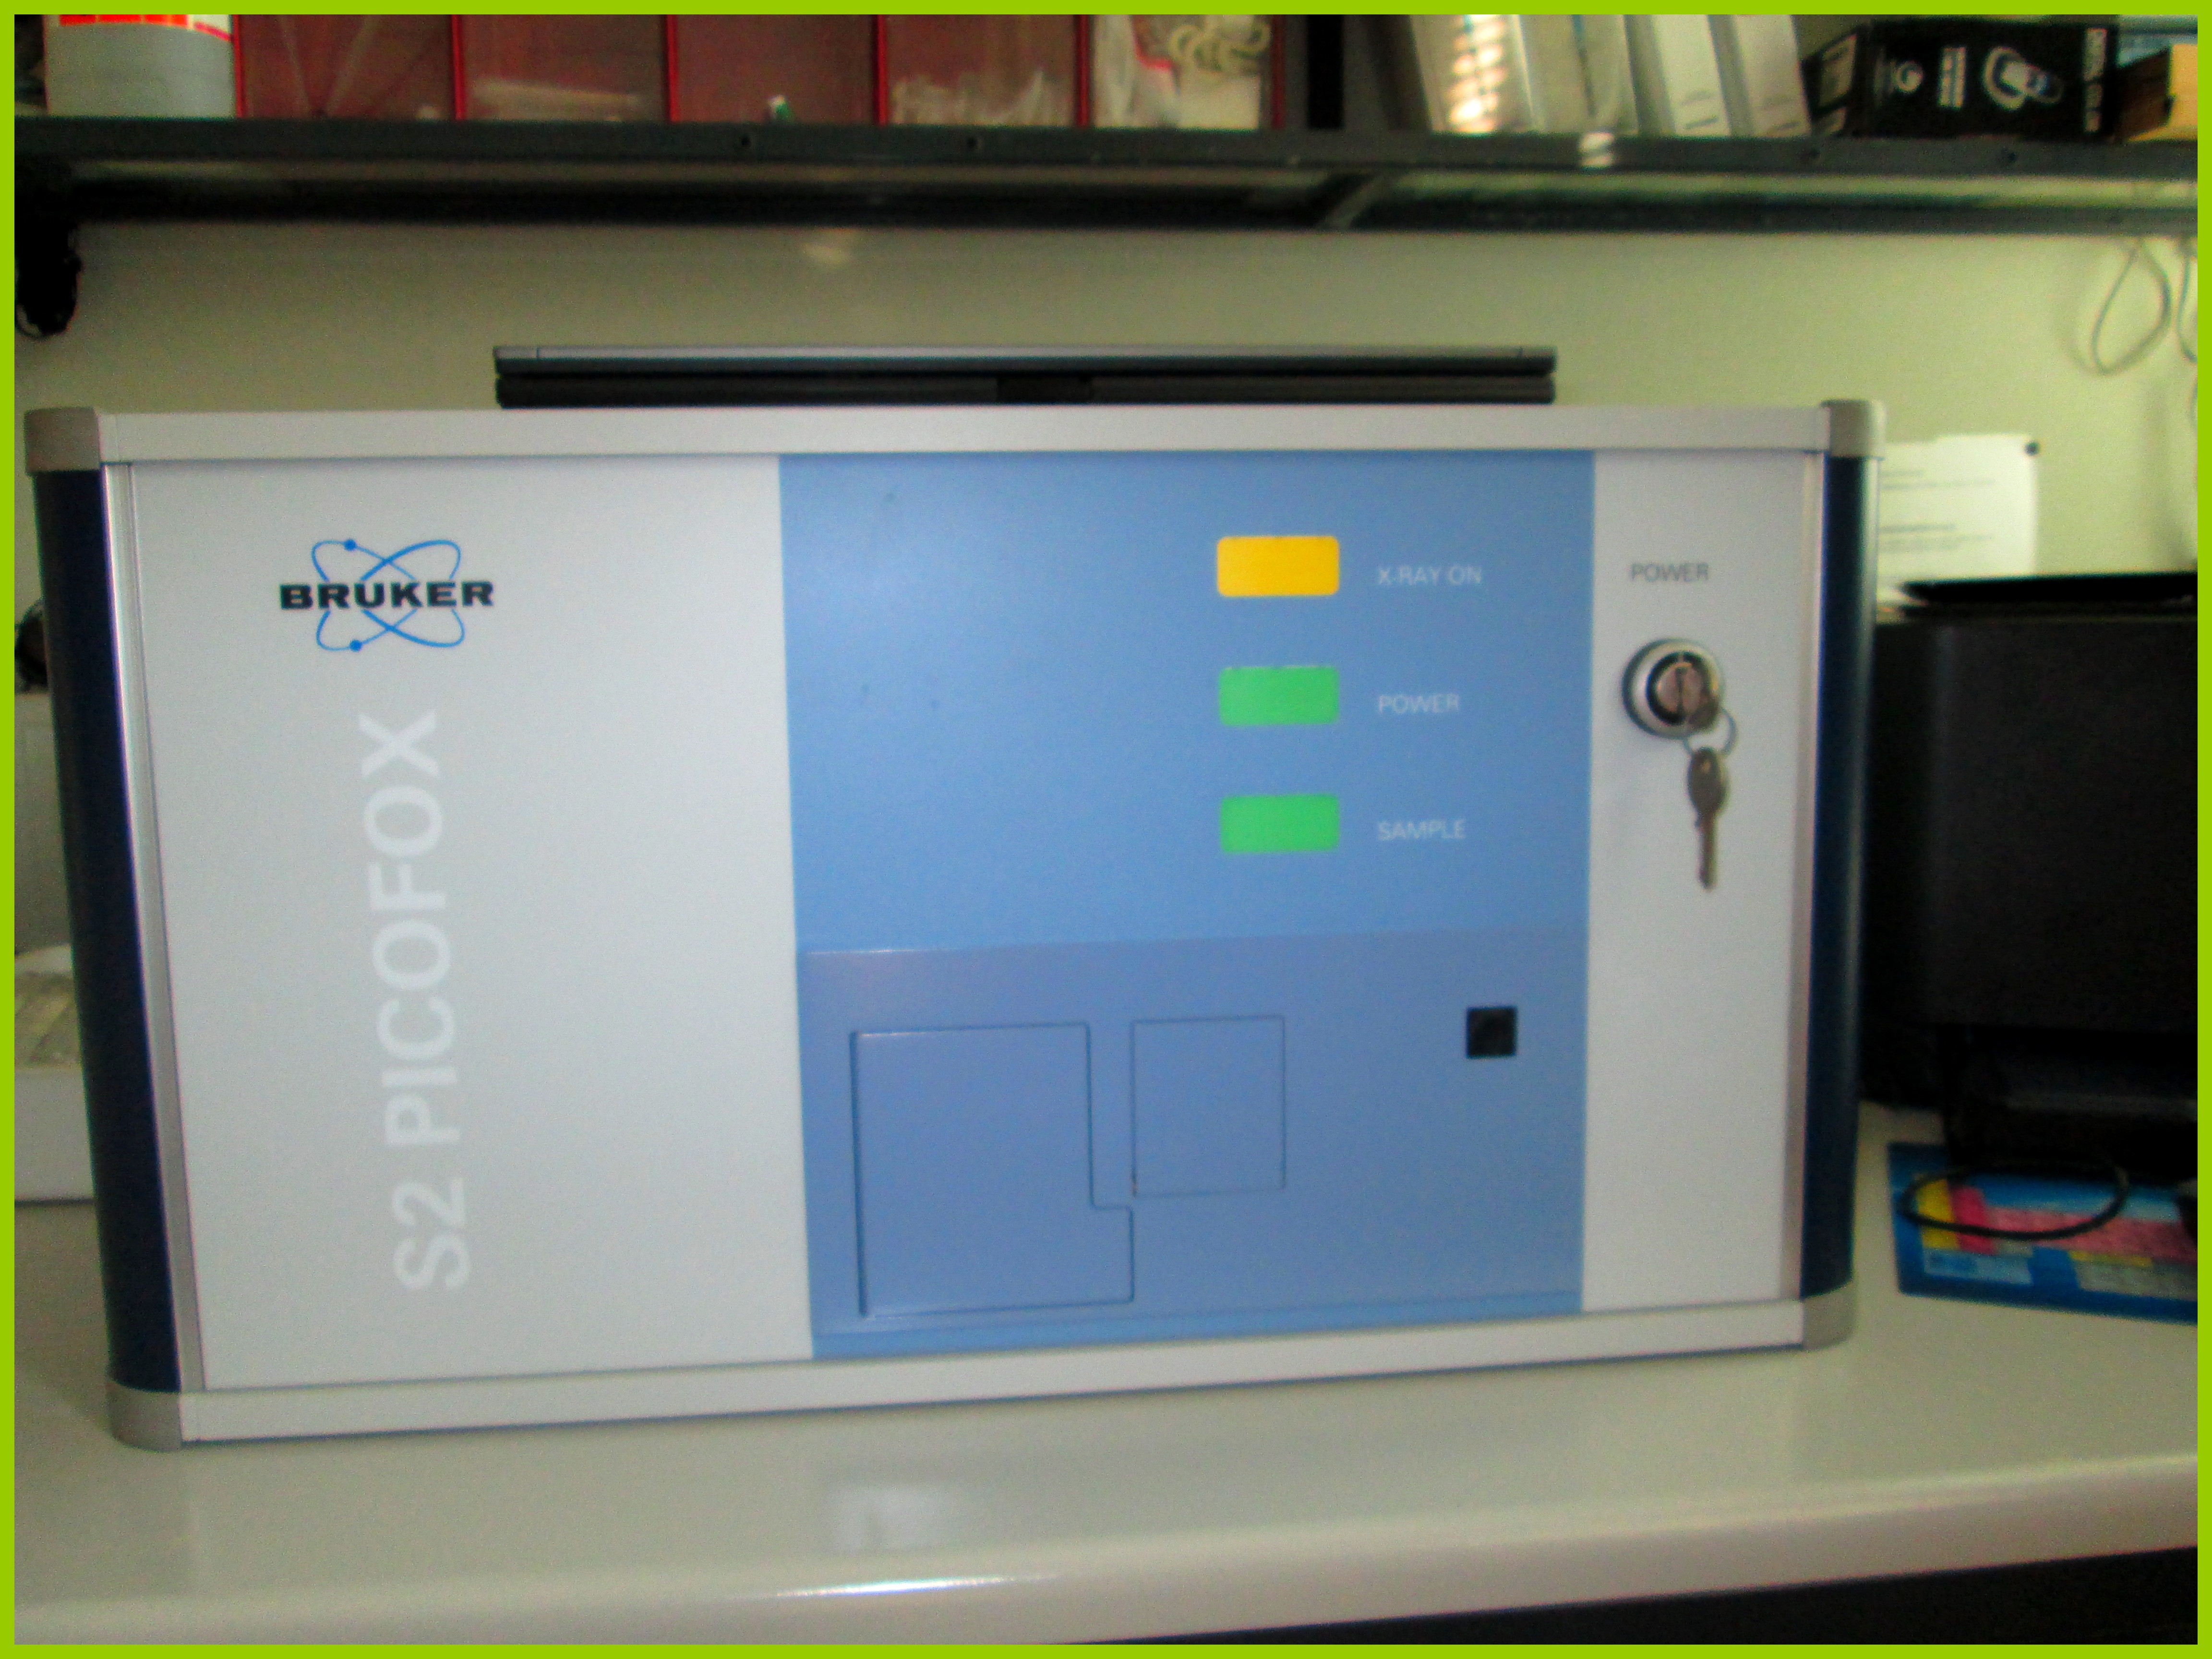 Spettrometro TXRF S2 Picofox (Bruker AXS Microanalysis GmbH)